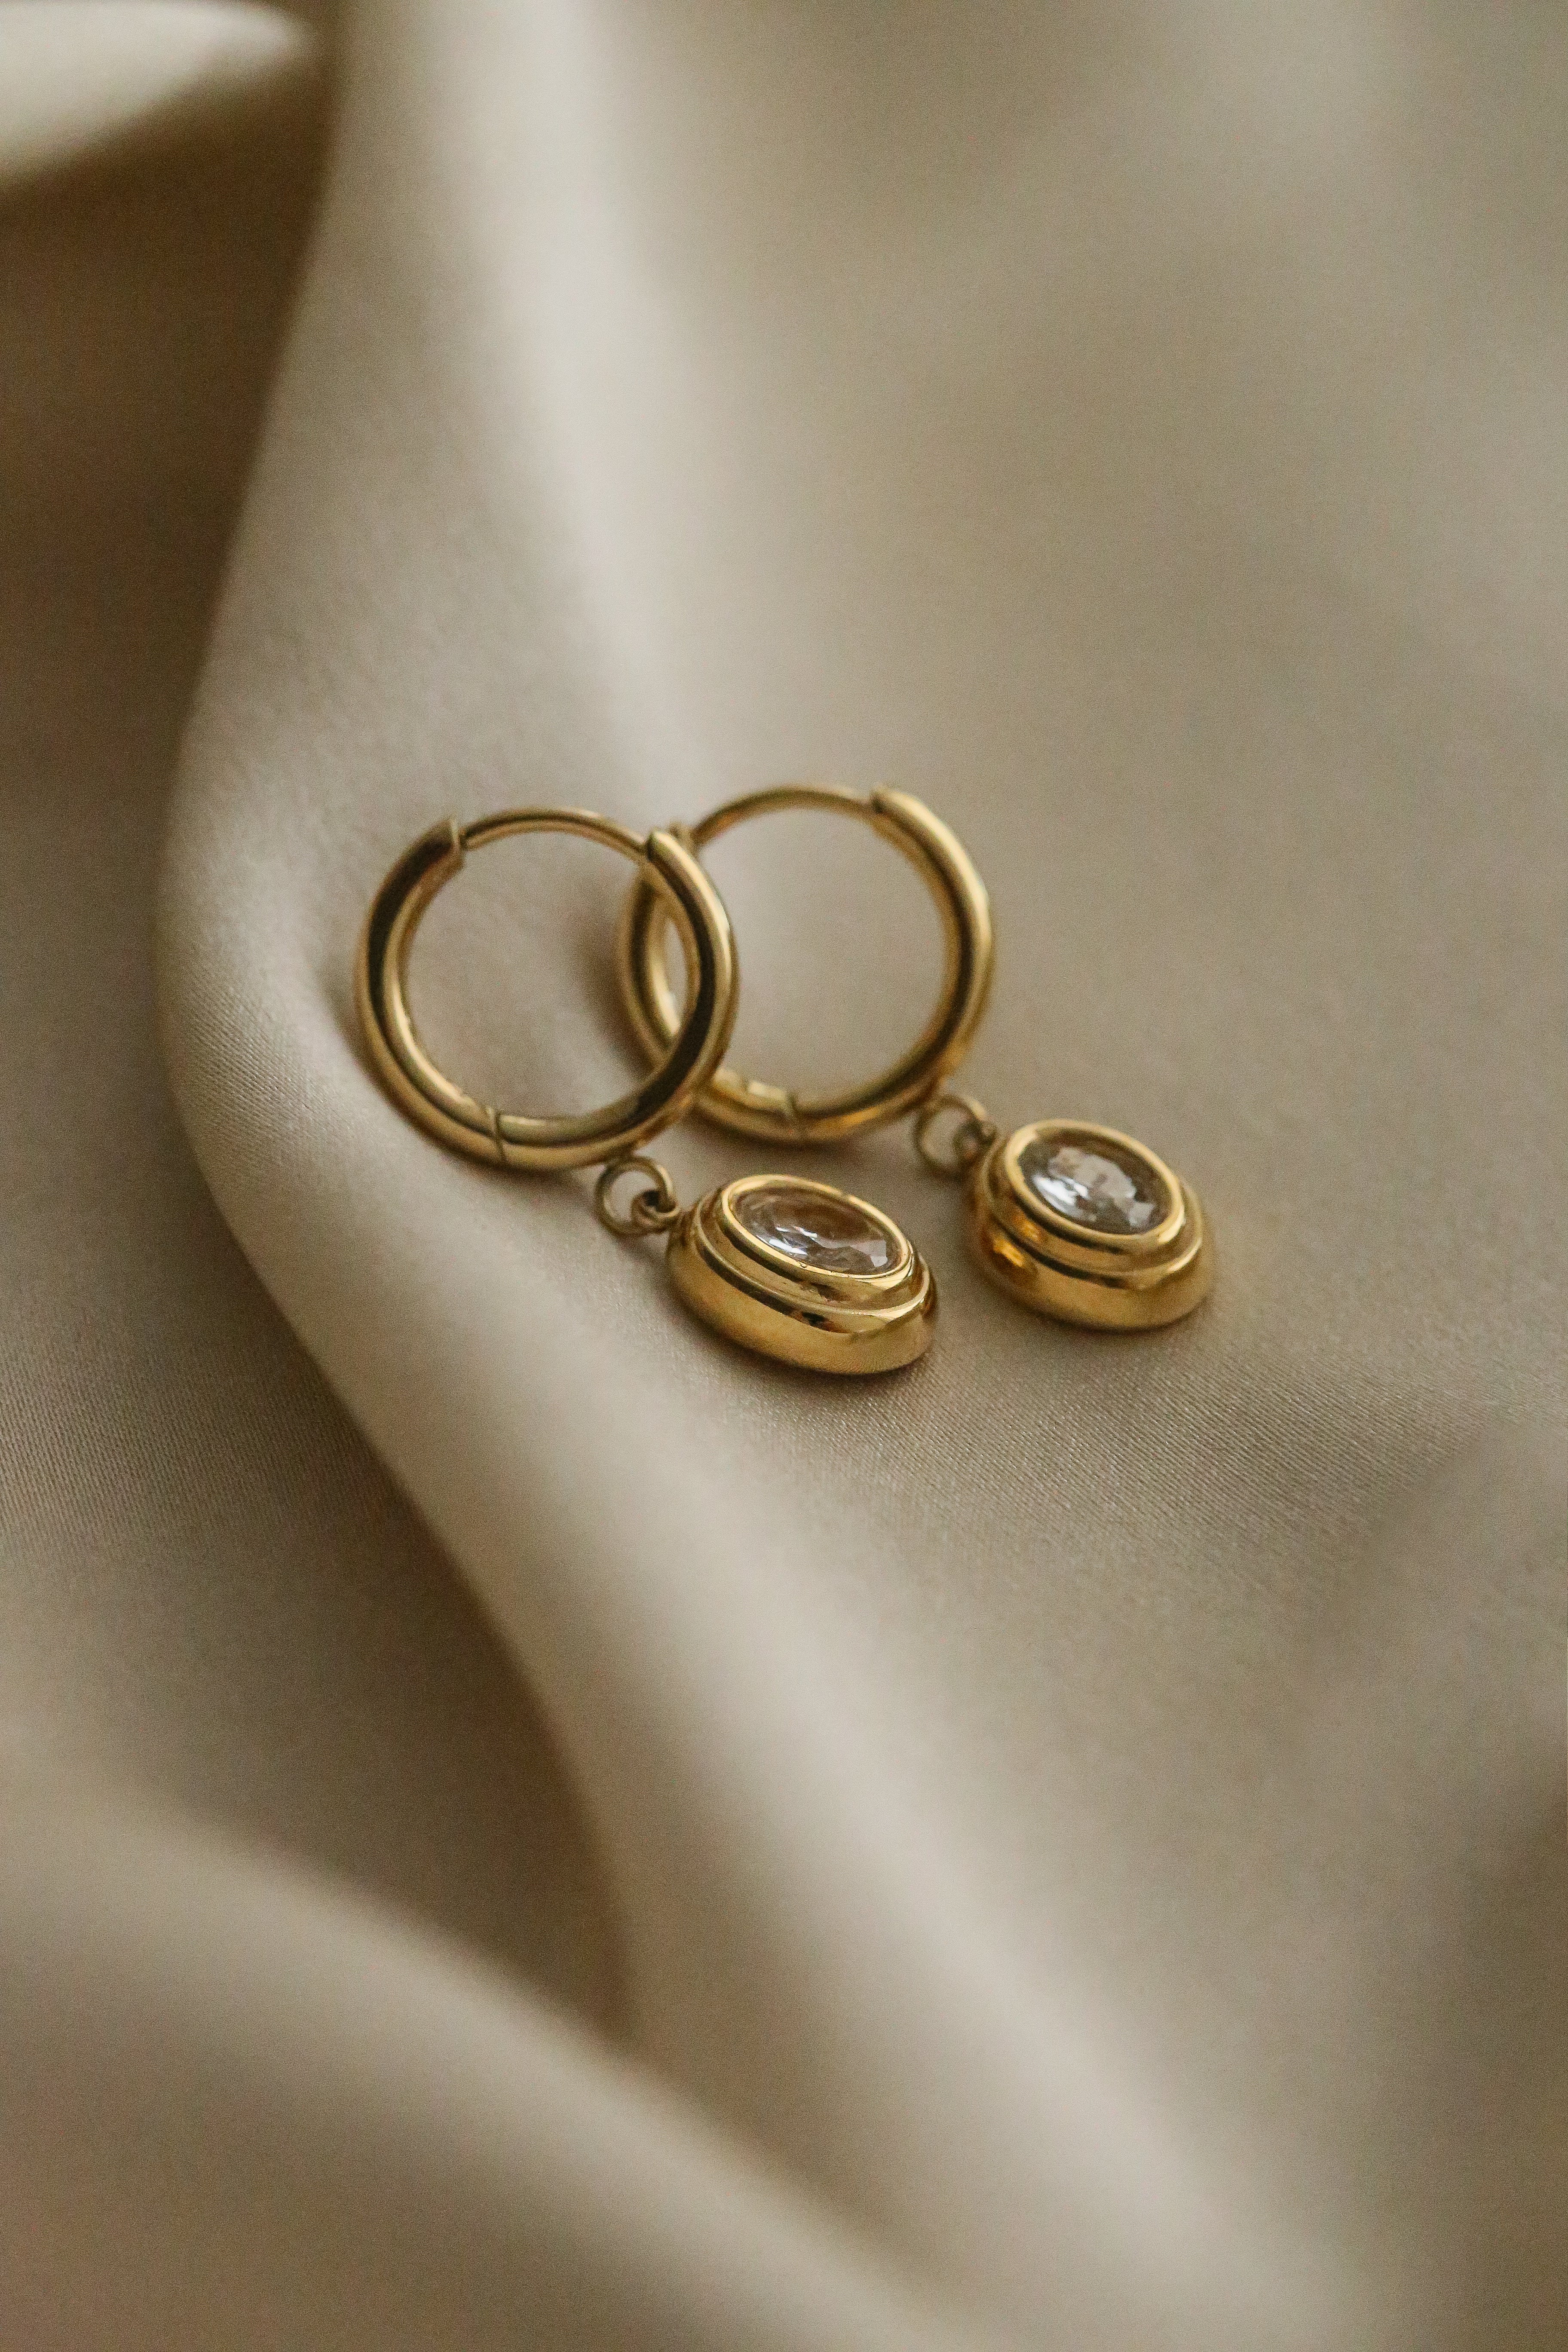 Sophie Earrings - Boutique Minimaliste has waterproof, durable, elegant and vintage inspired jewelry